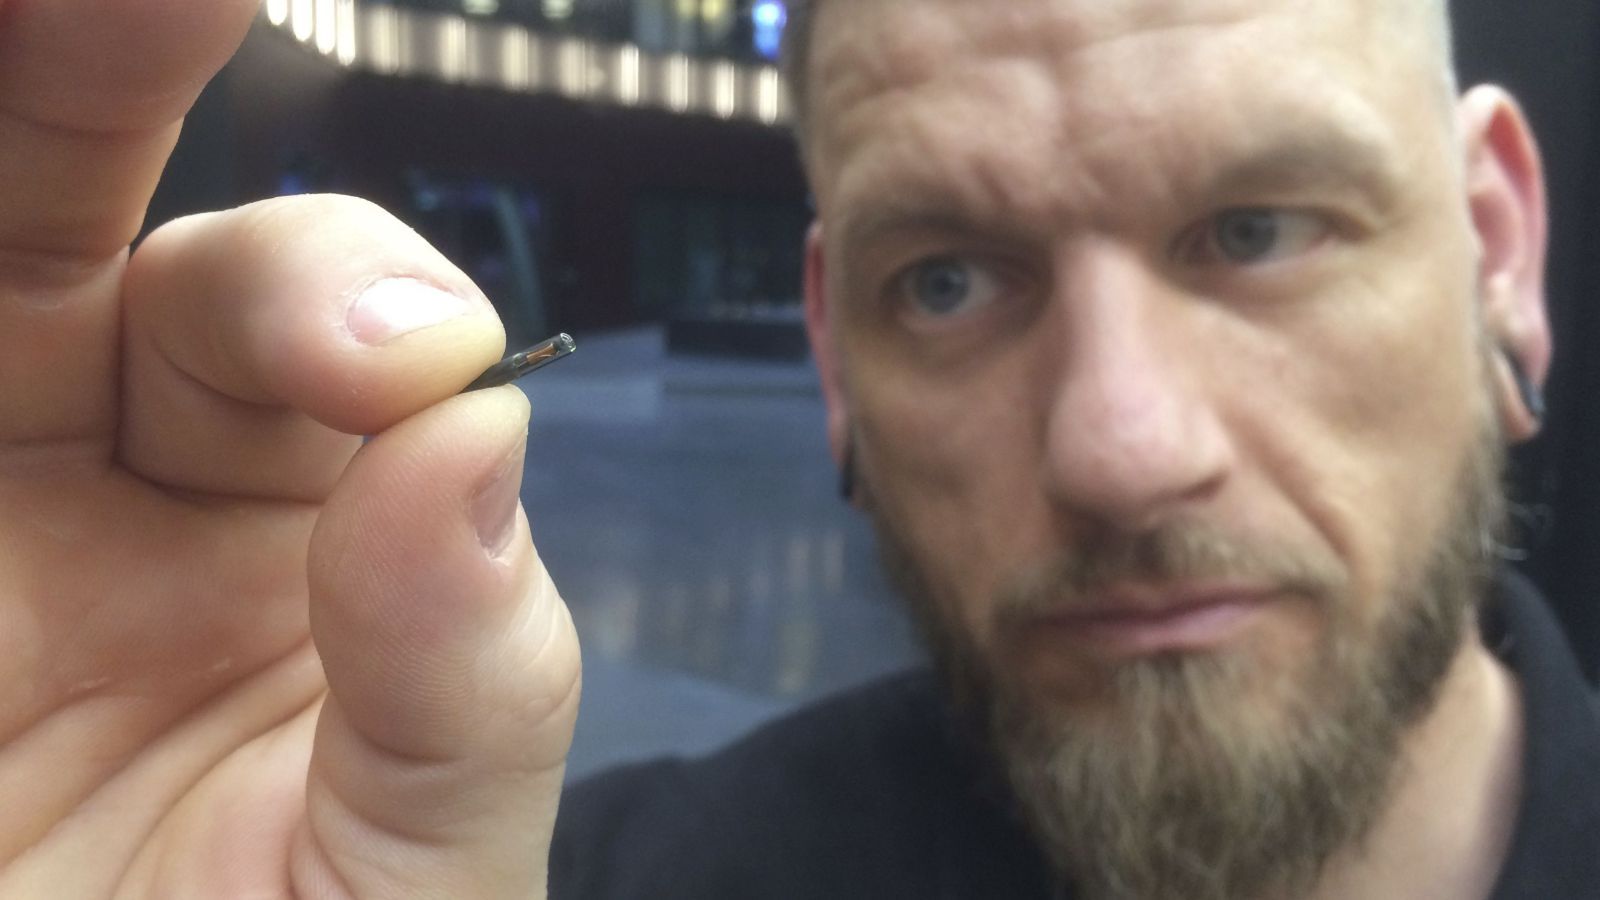 Una empresa que implanta microchips en sus empleados dice que no es para rastrearlos